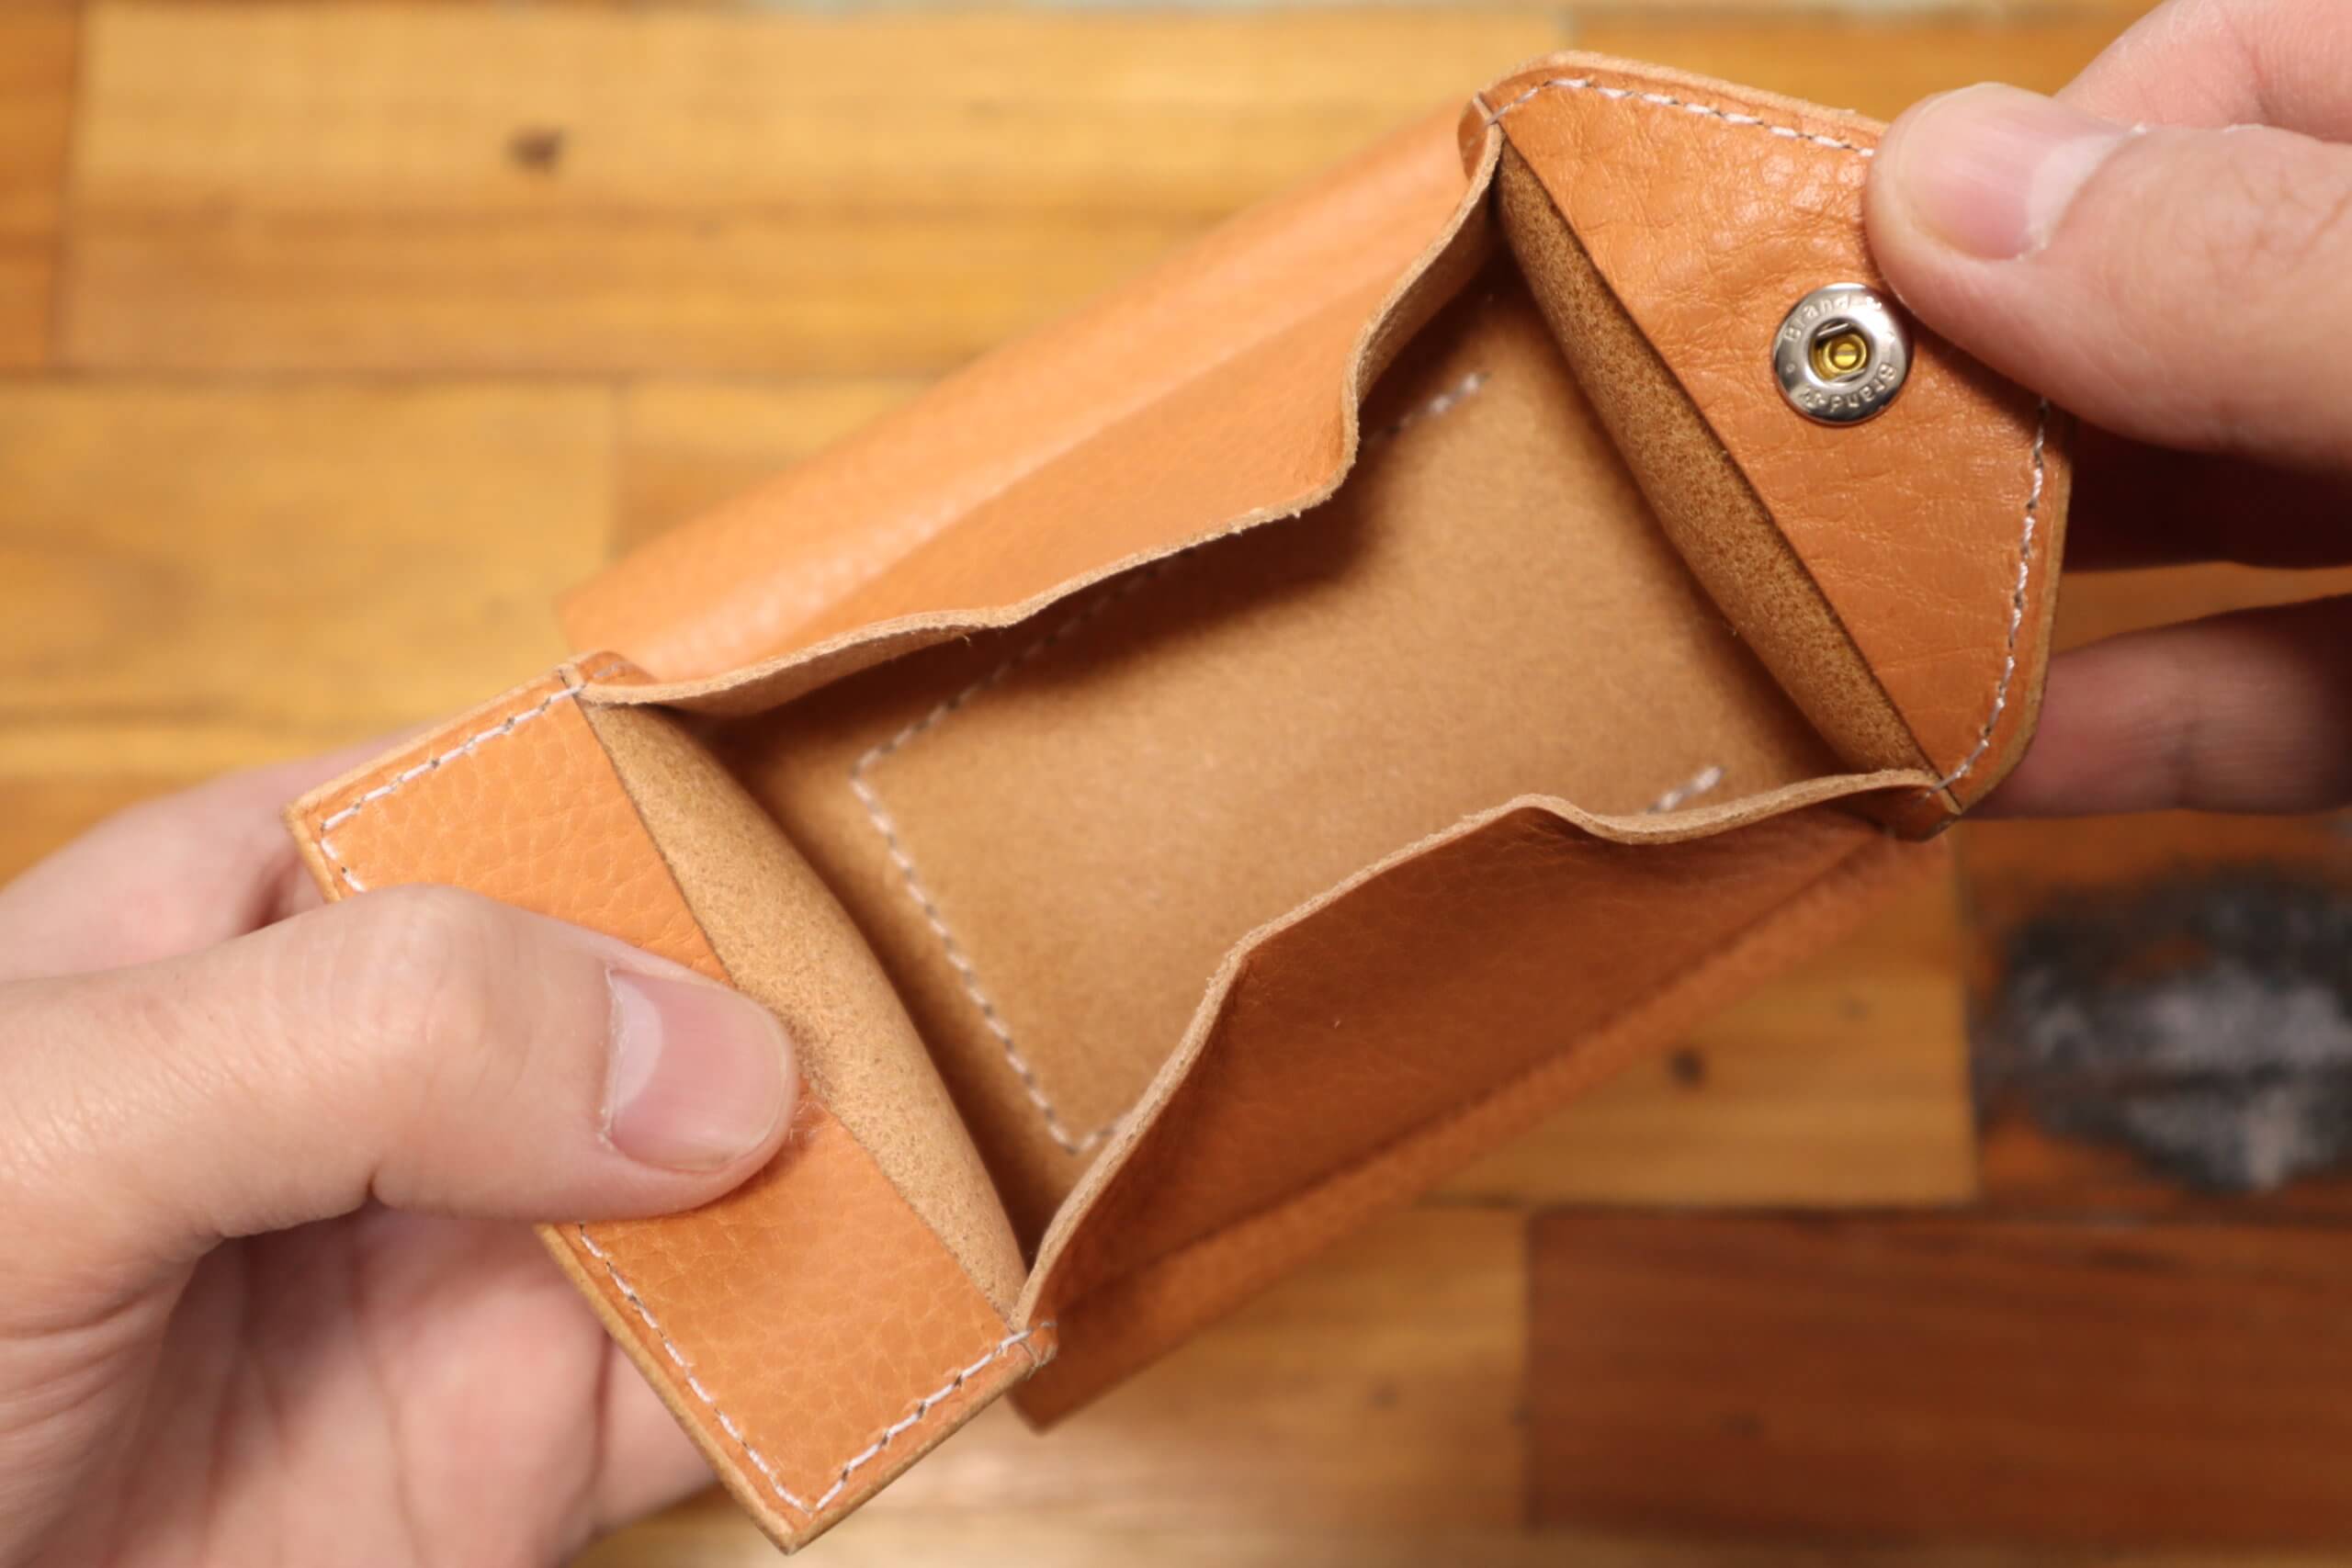 レビュー】エンダースキーマの三つ折り財布『trifold wallet 